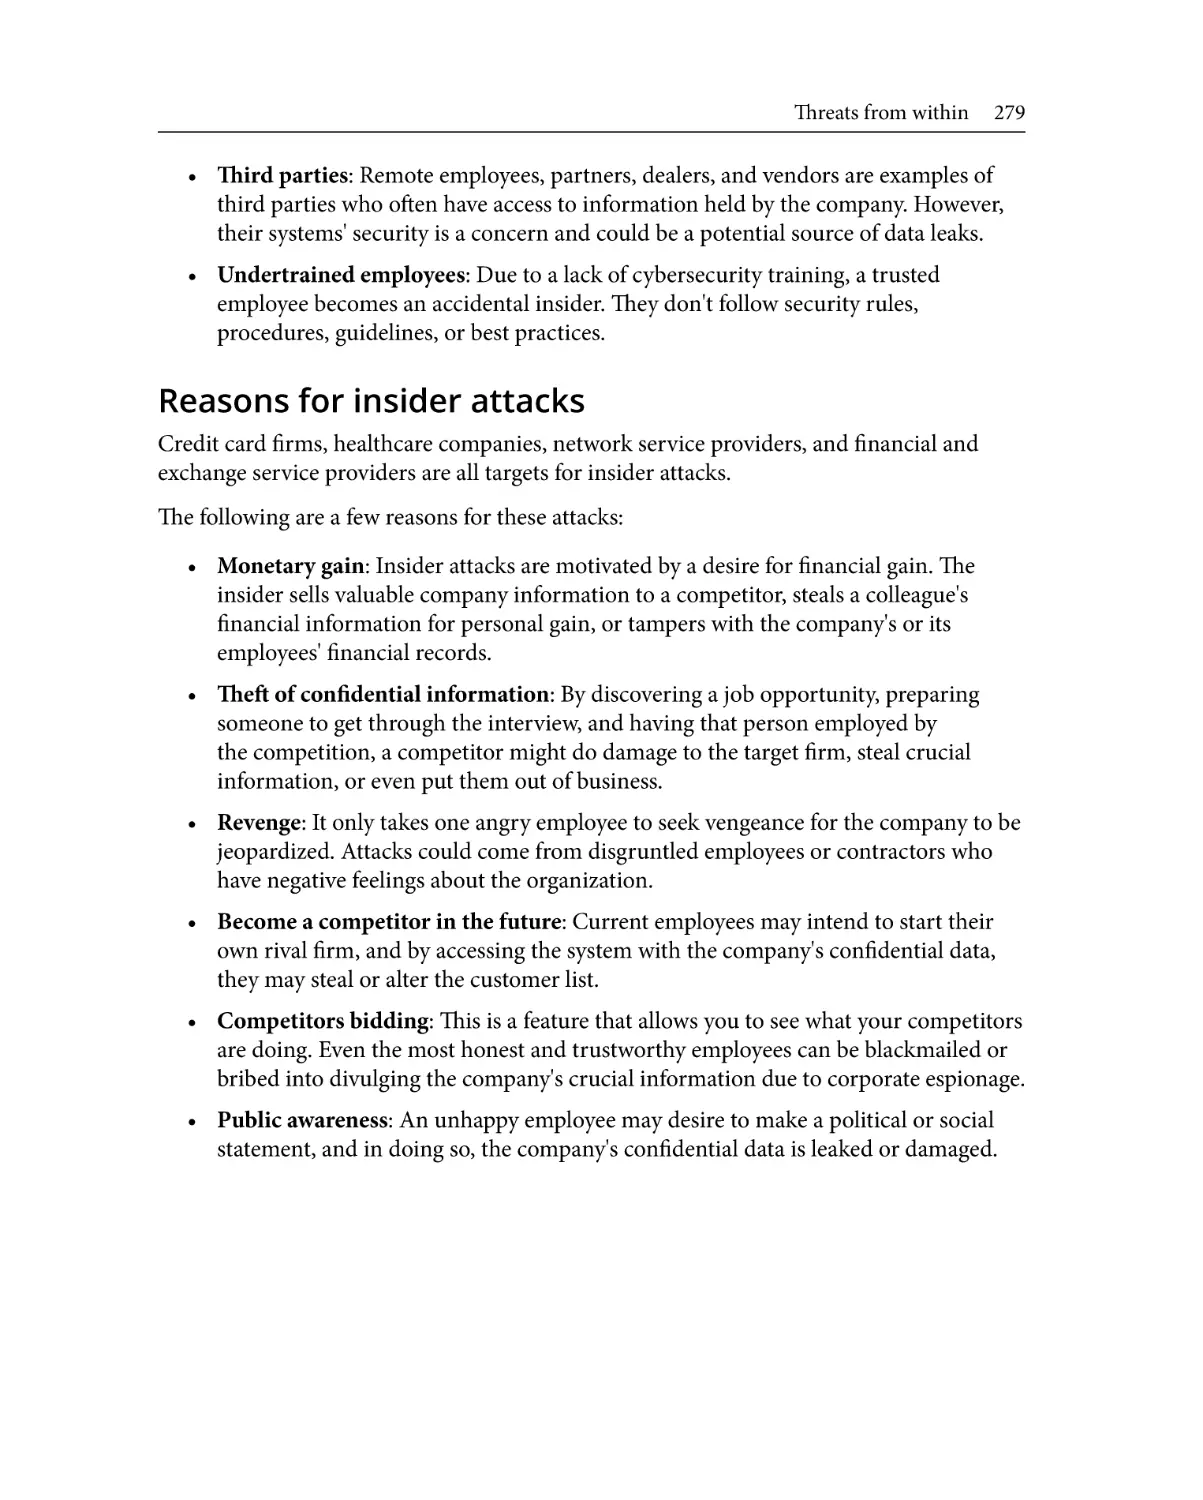 Reasons for insider attacks